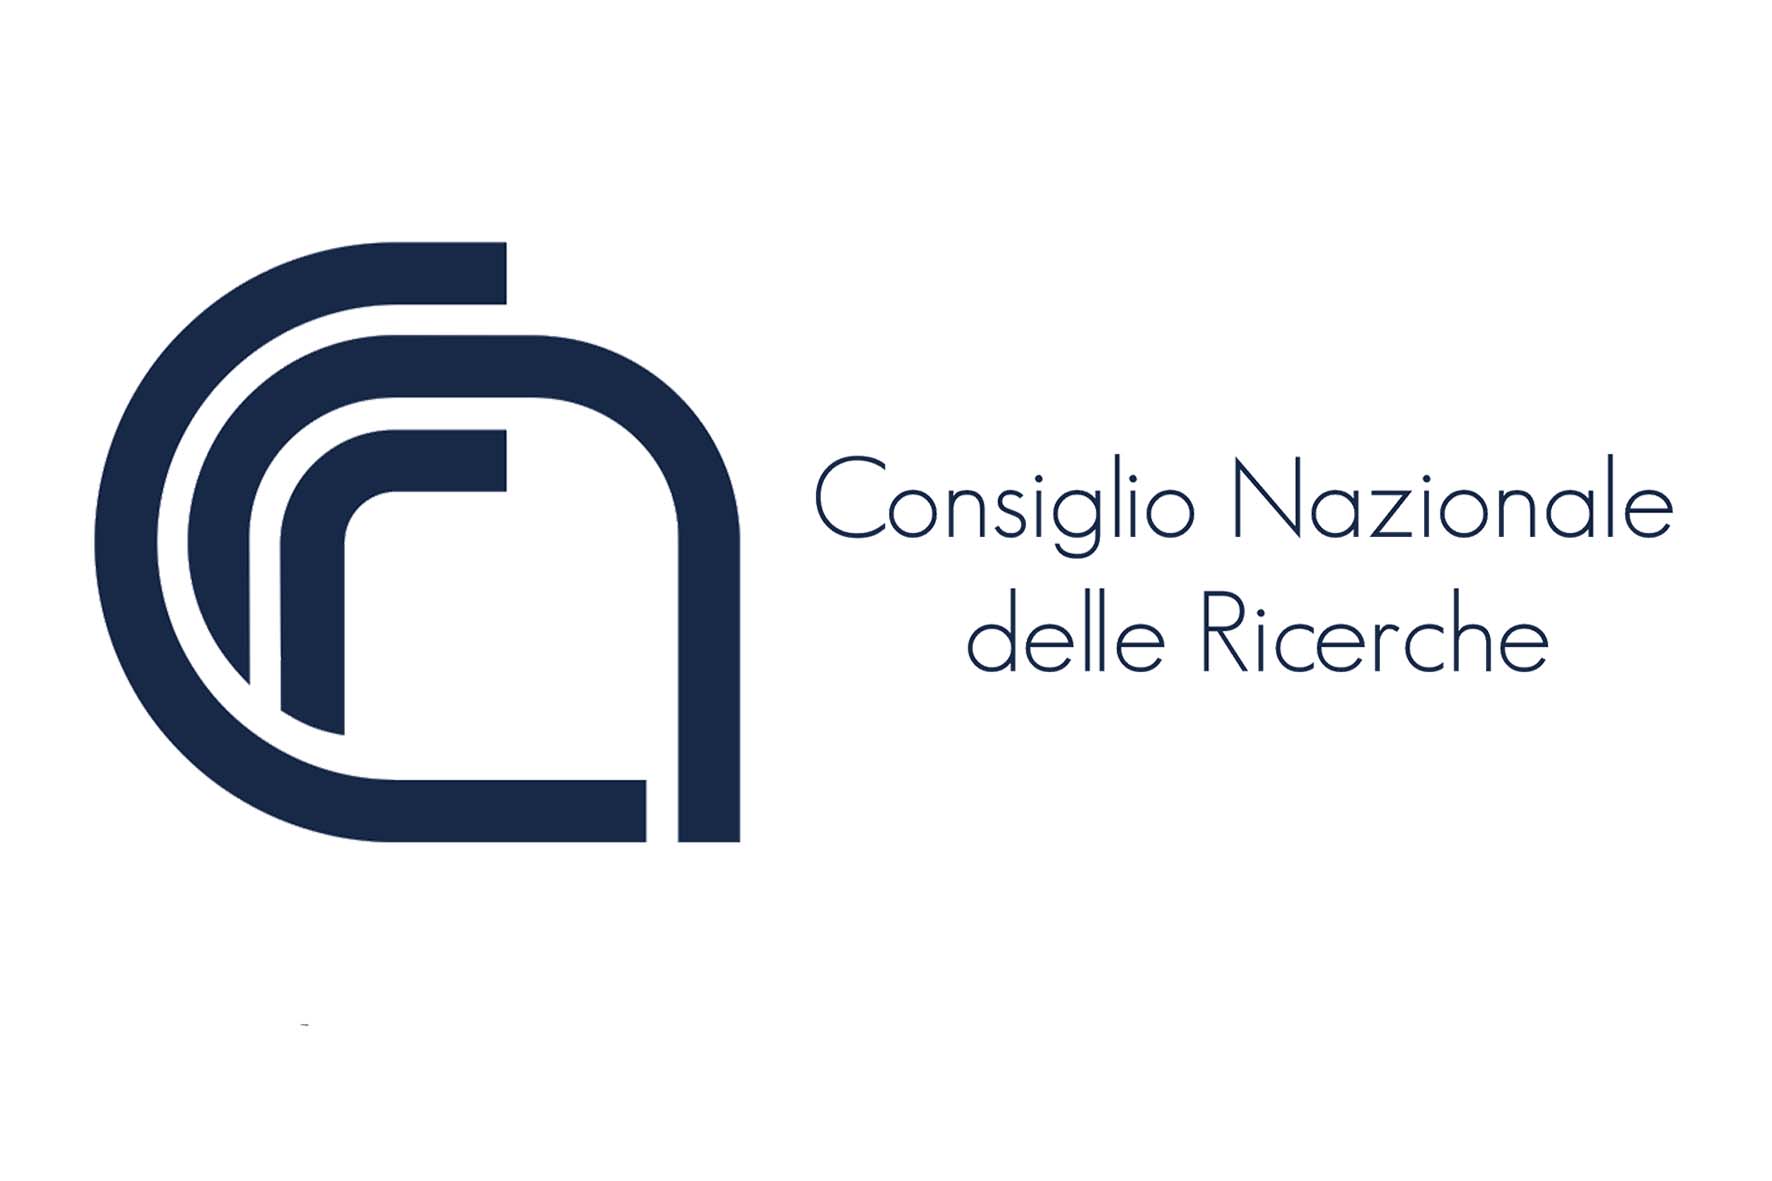 cnr logo